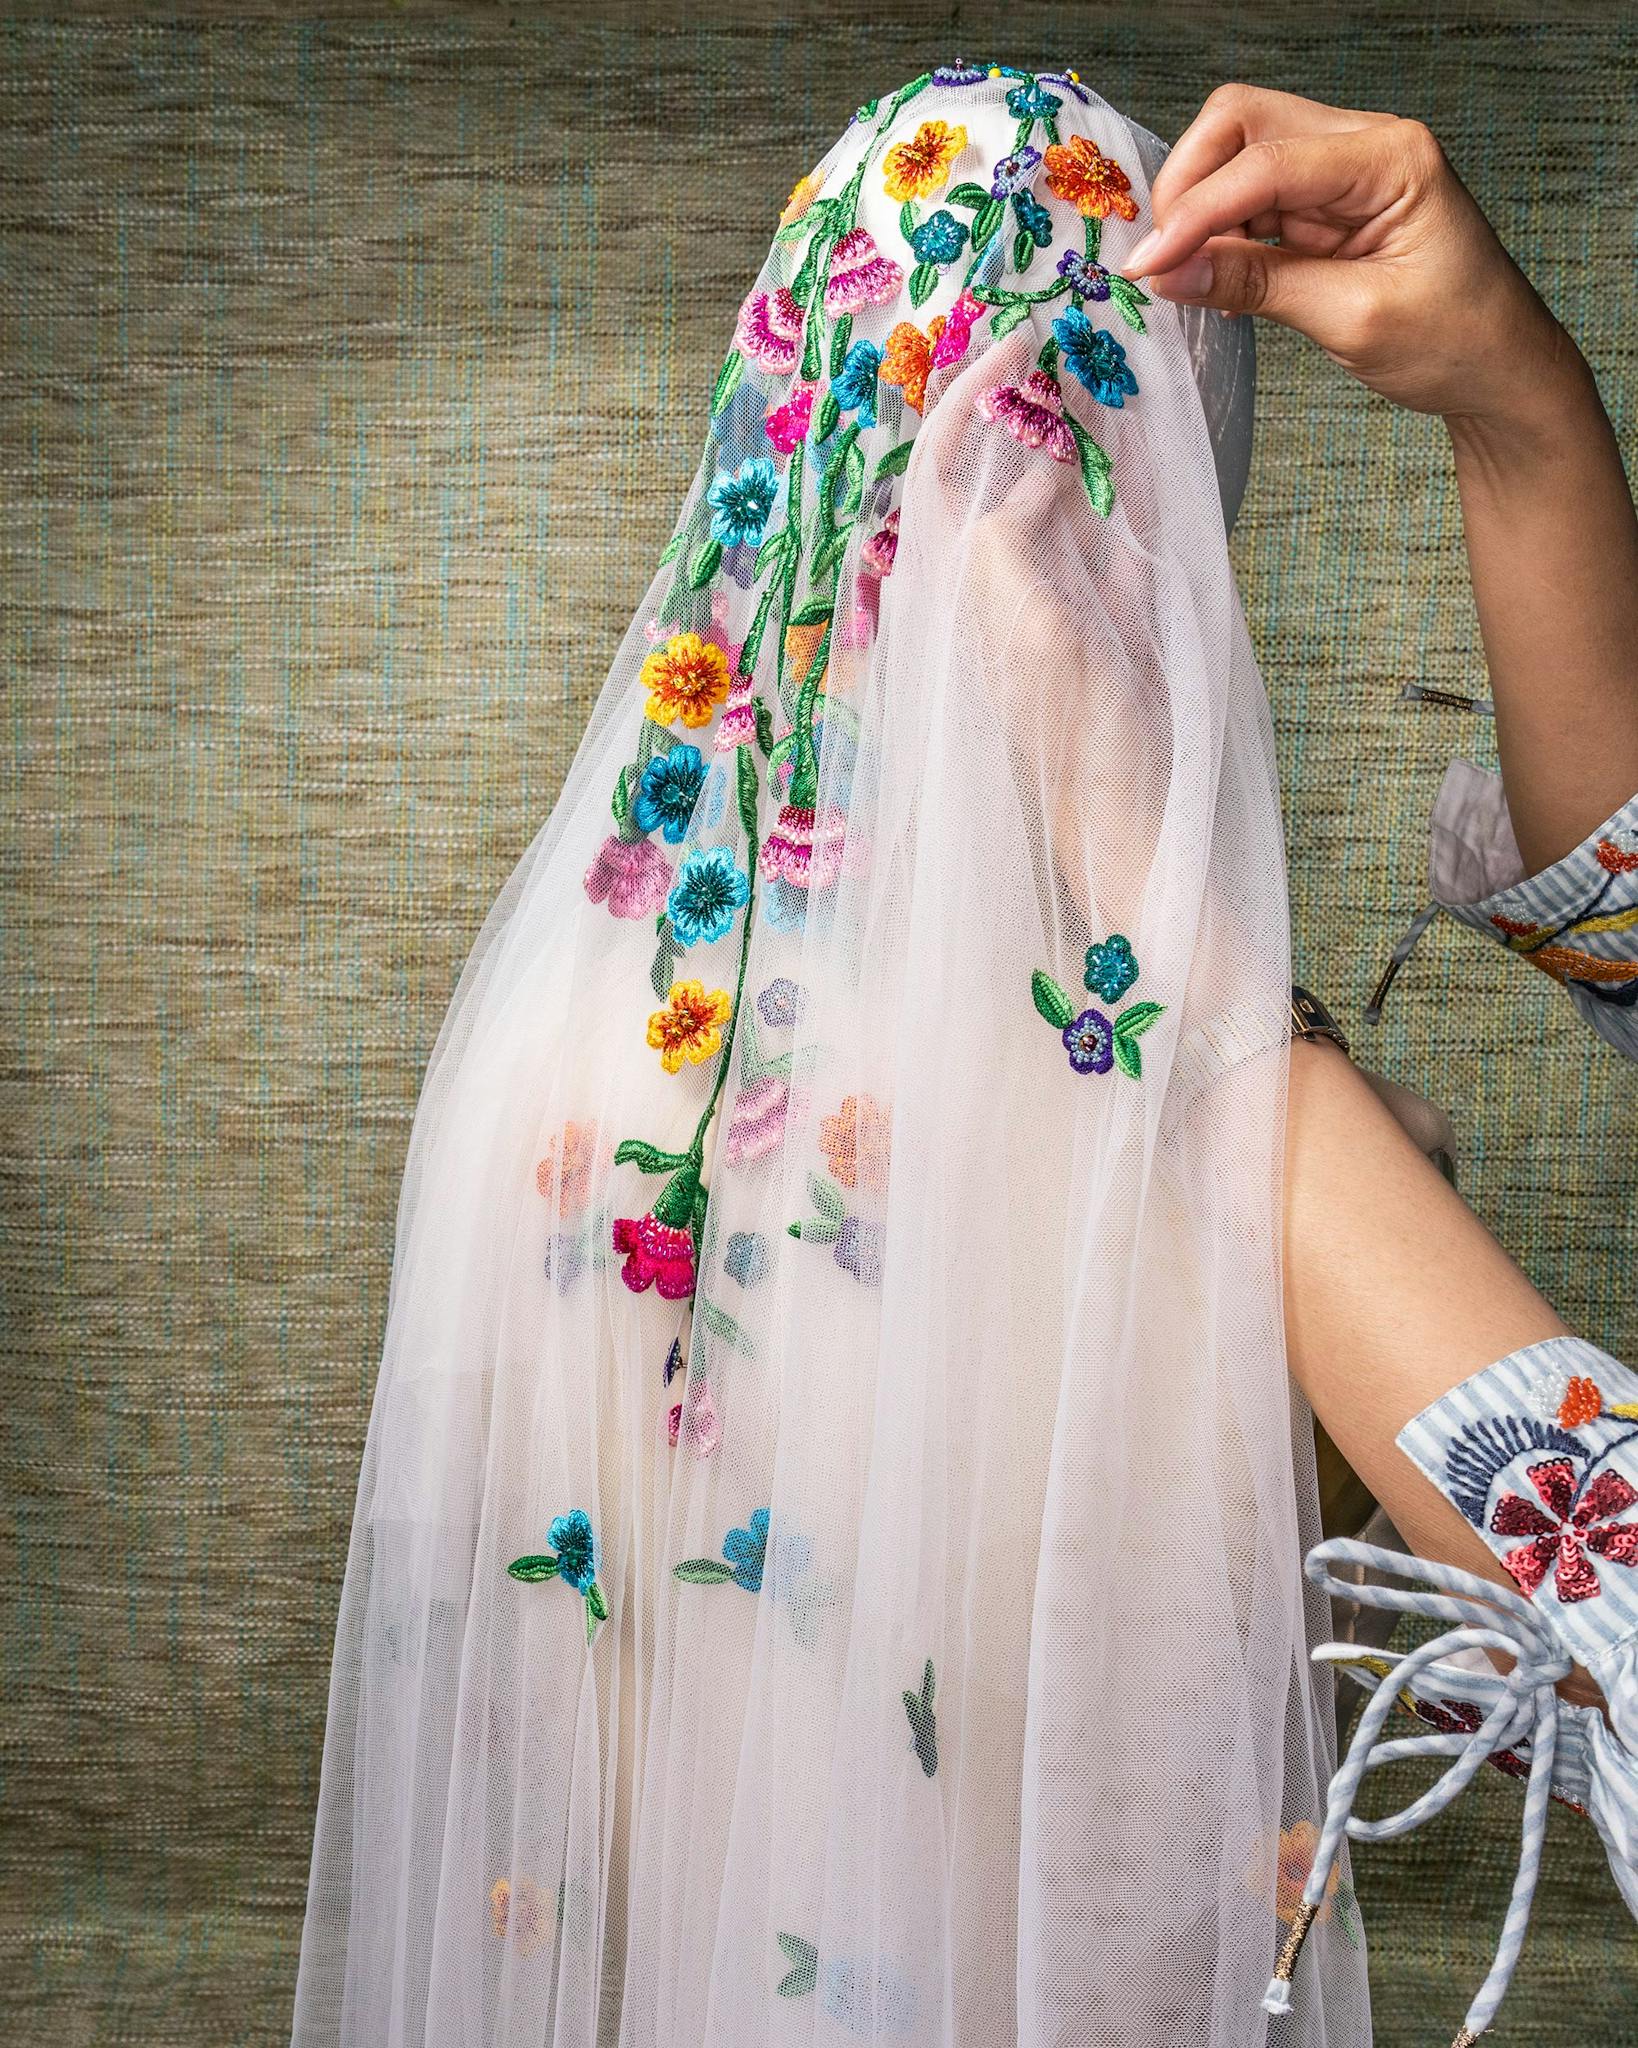 Veronica-Prida-Da-Vero-Davero-Bridal-San-Antonio-embroidered-veil